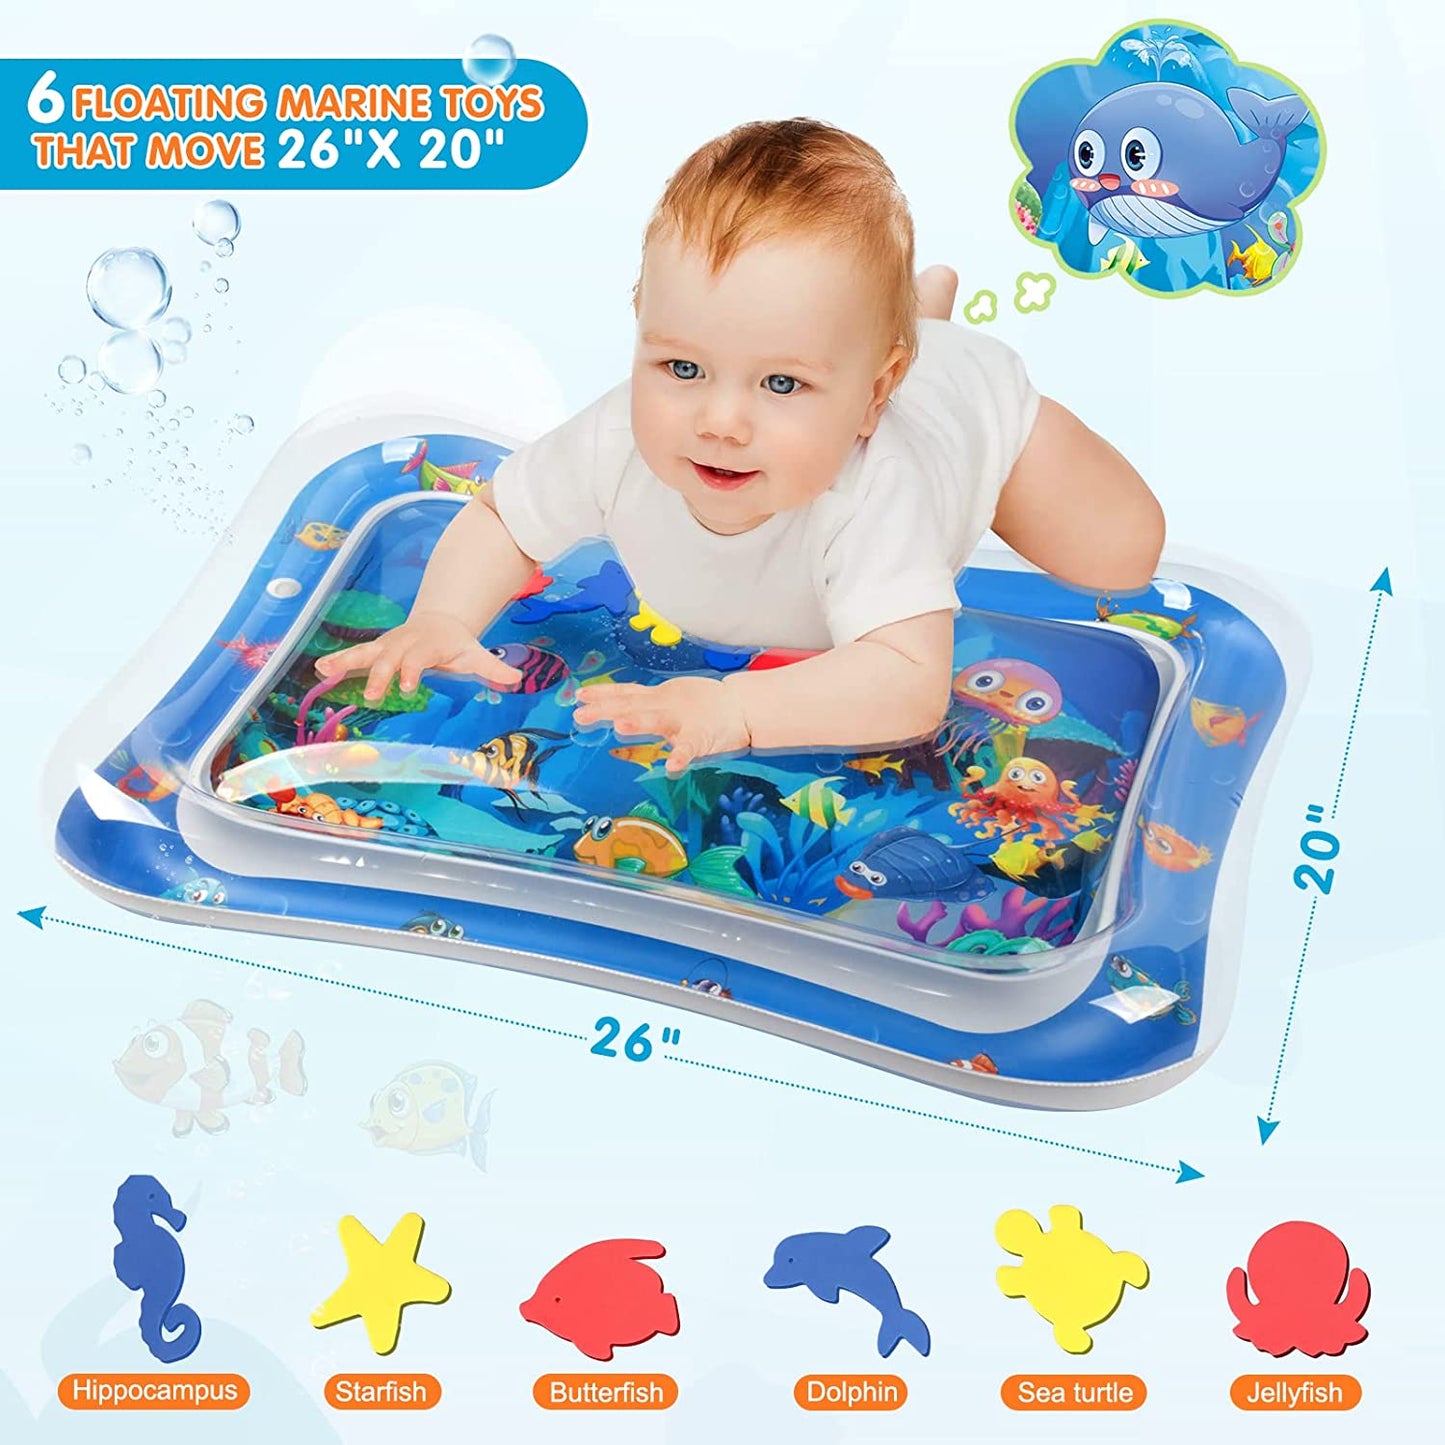 Premium Baby Water Play Mat